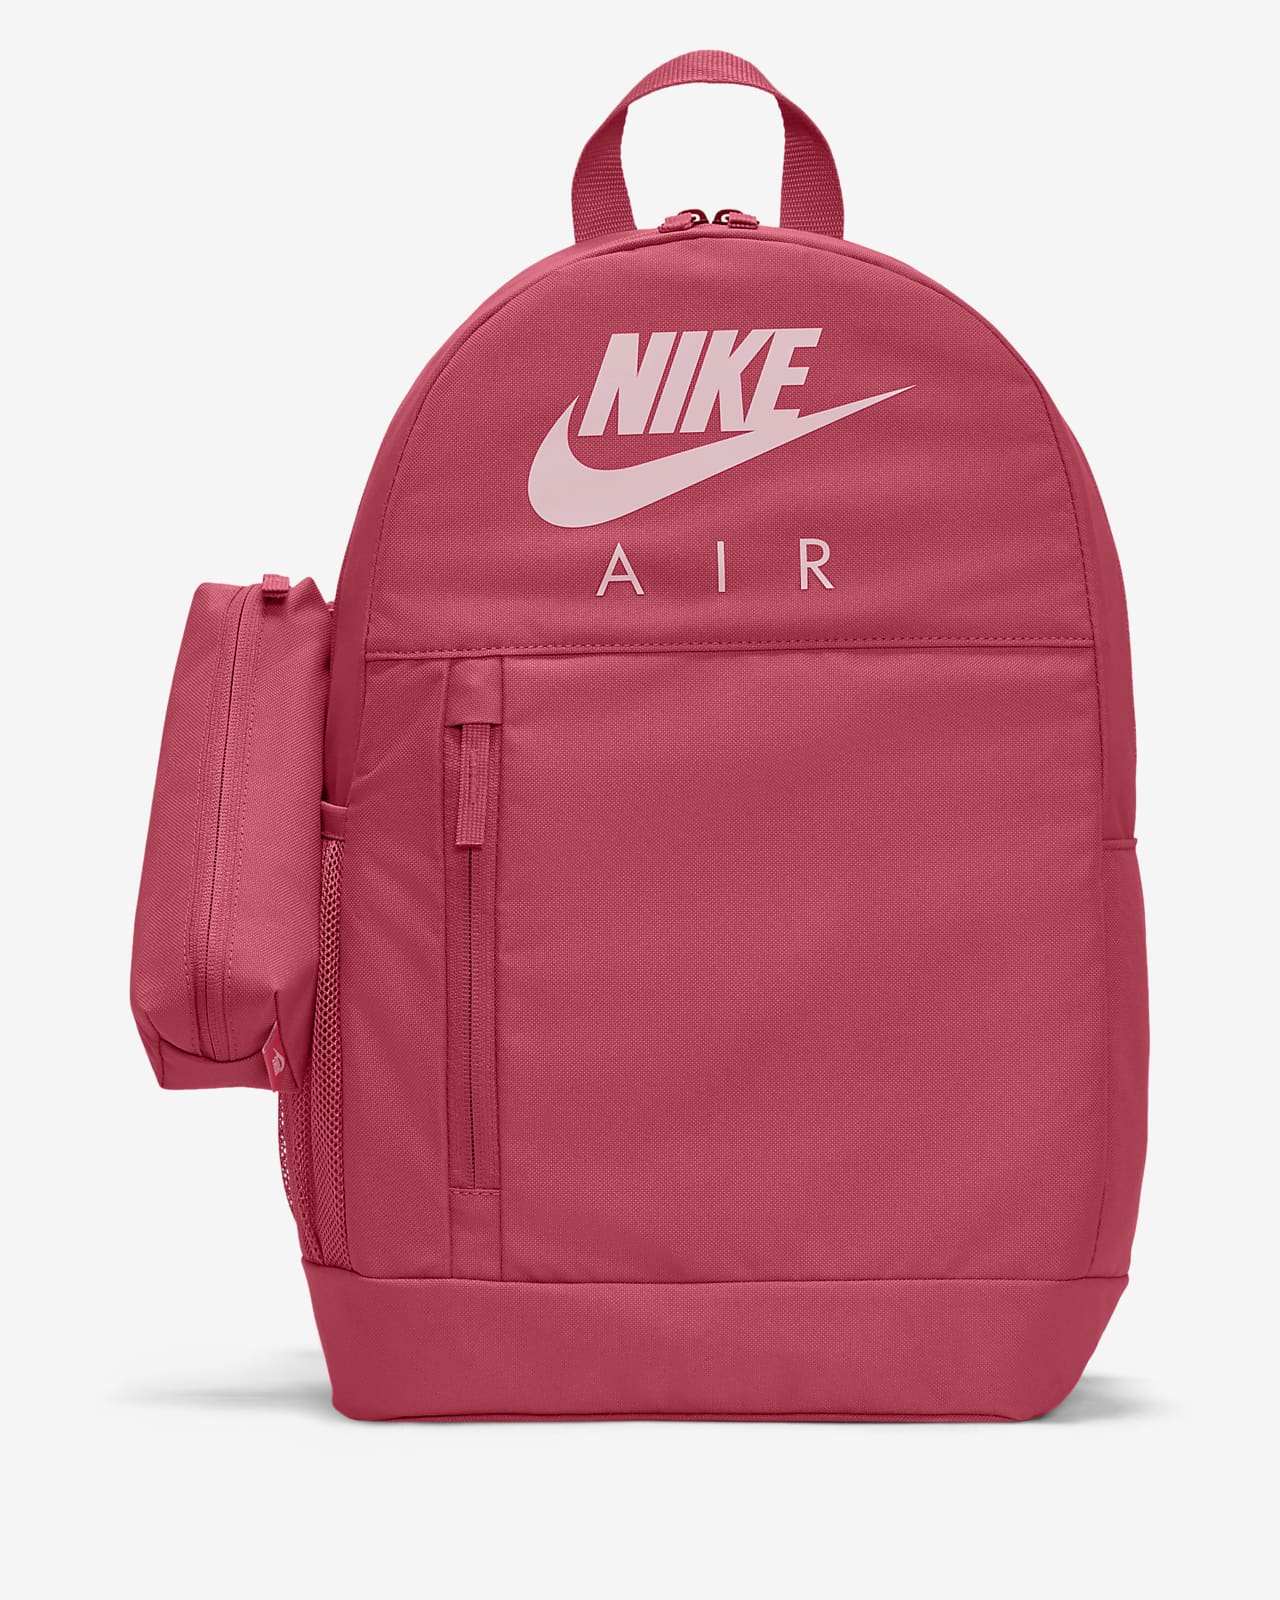 Nike-rygsæk til børn (20 L). DK